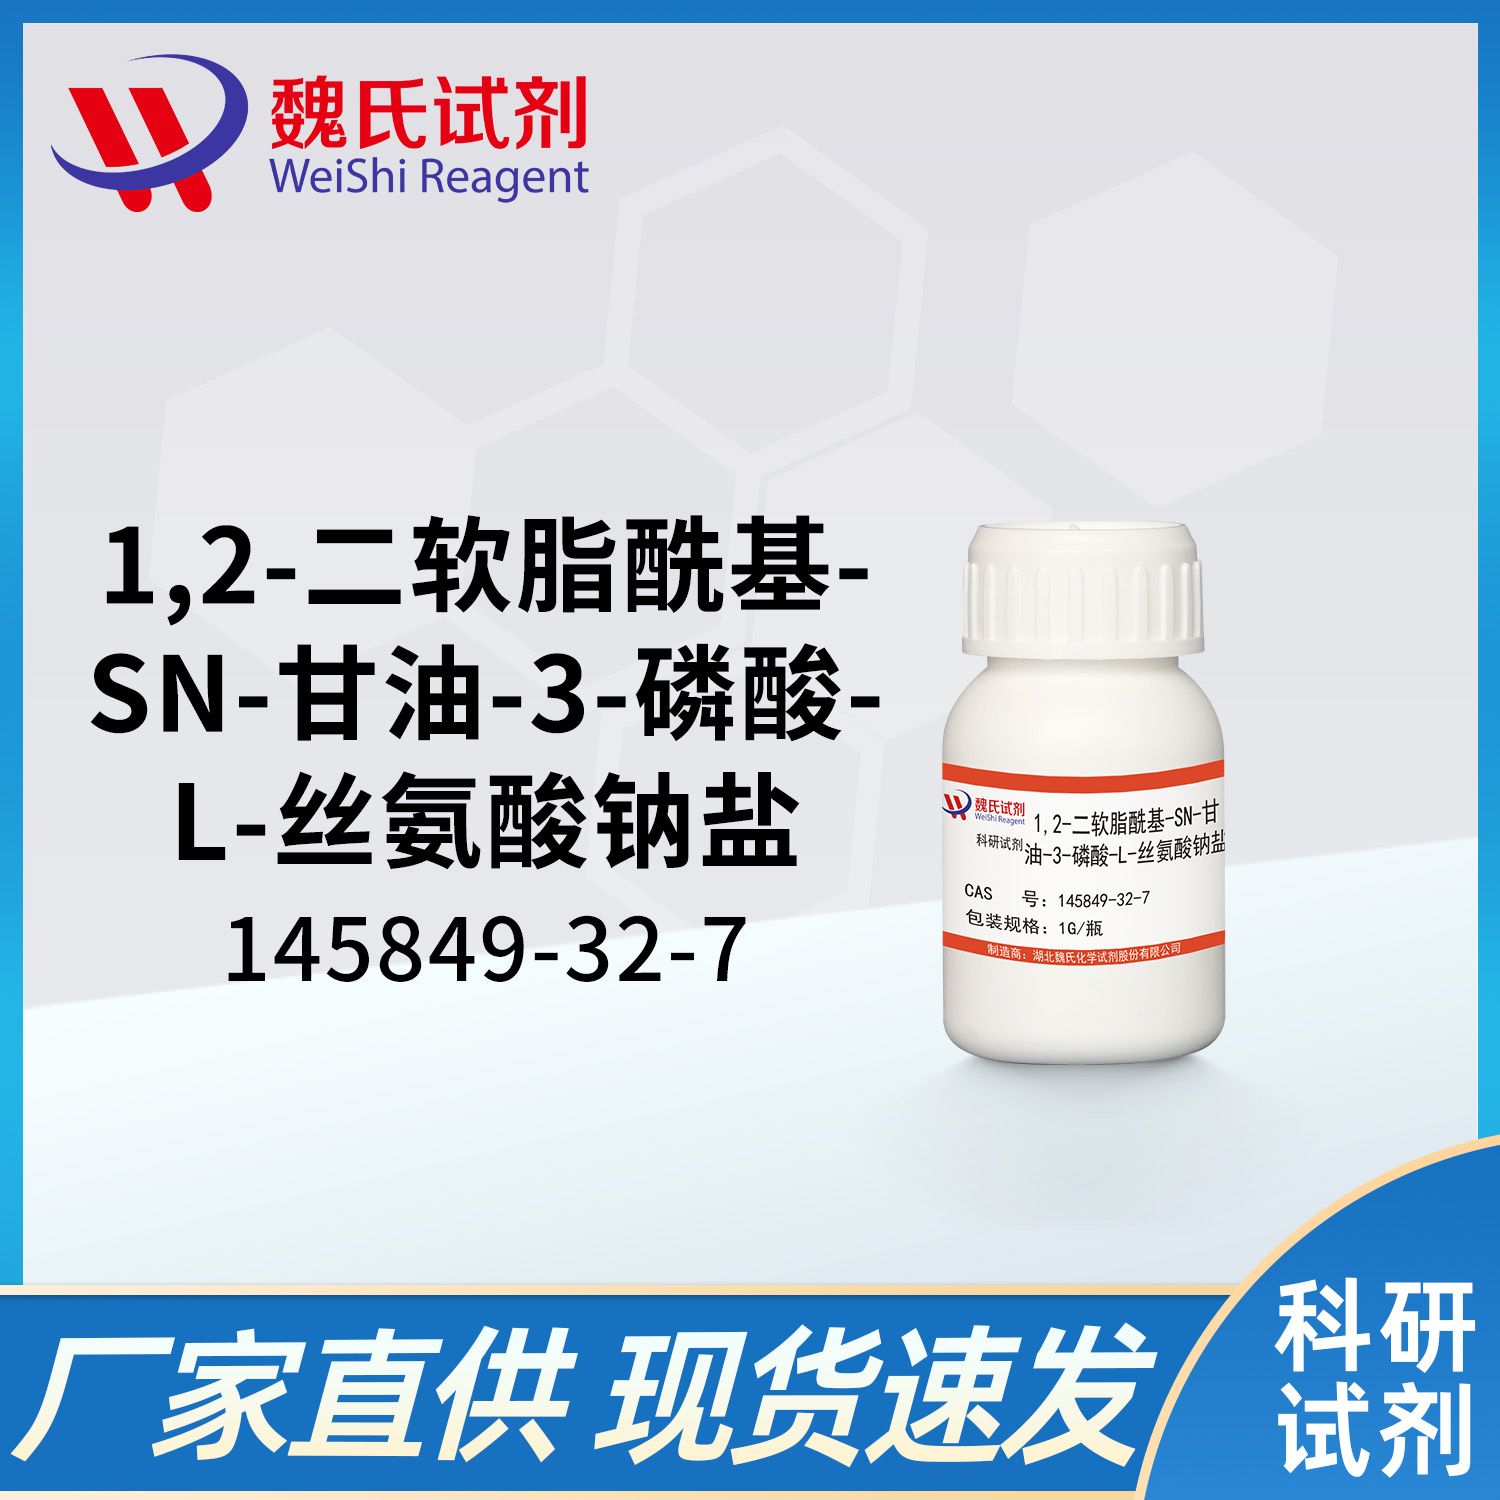 1,2-二软脂酰基-sn-甘油-3-磷酸-L-丝氨酸钠盐/(DPPS-NA